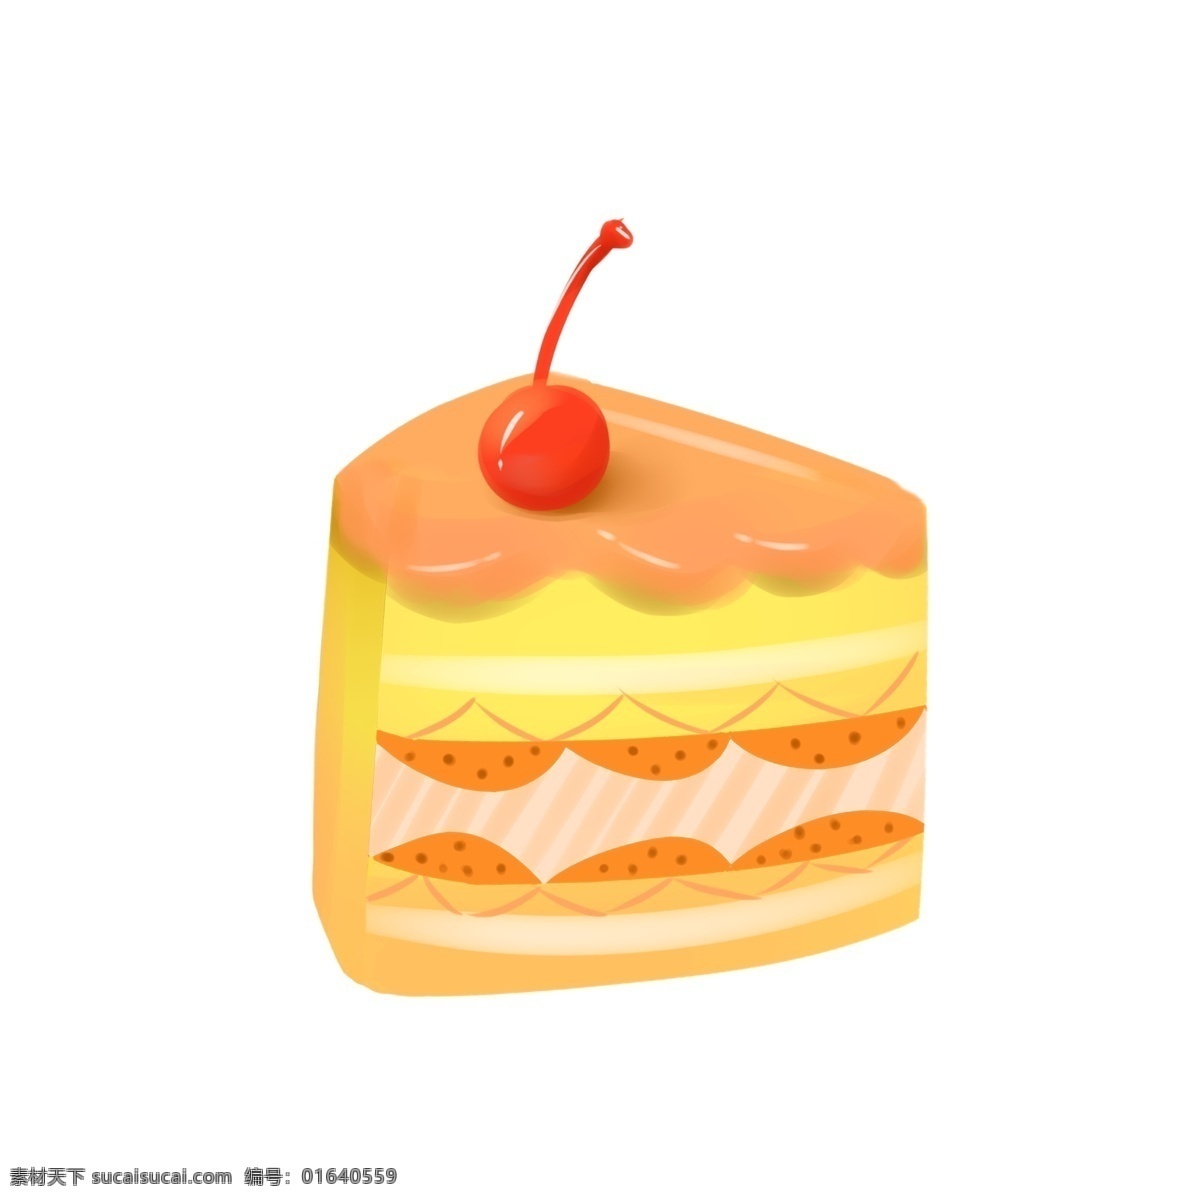 美食 香橙 夹心 樱桃 蛋糕 甜品 卡通 手绘 香橙夹心 香橙味